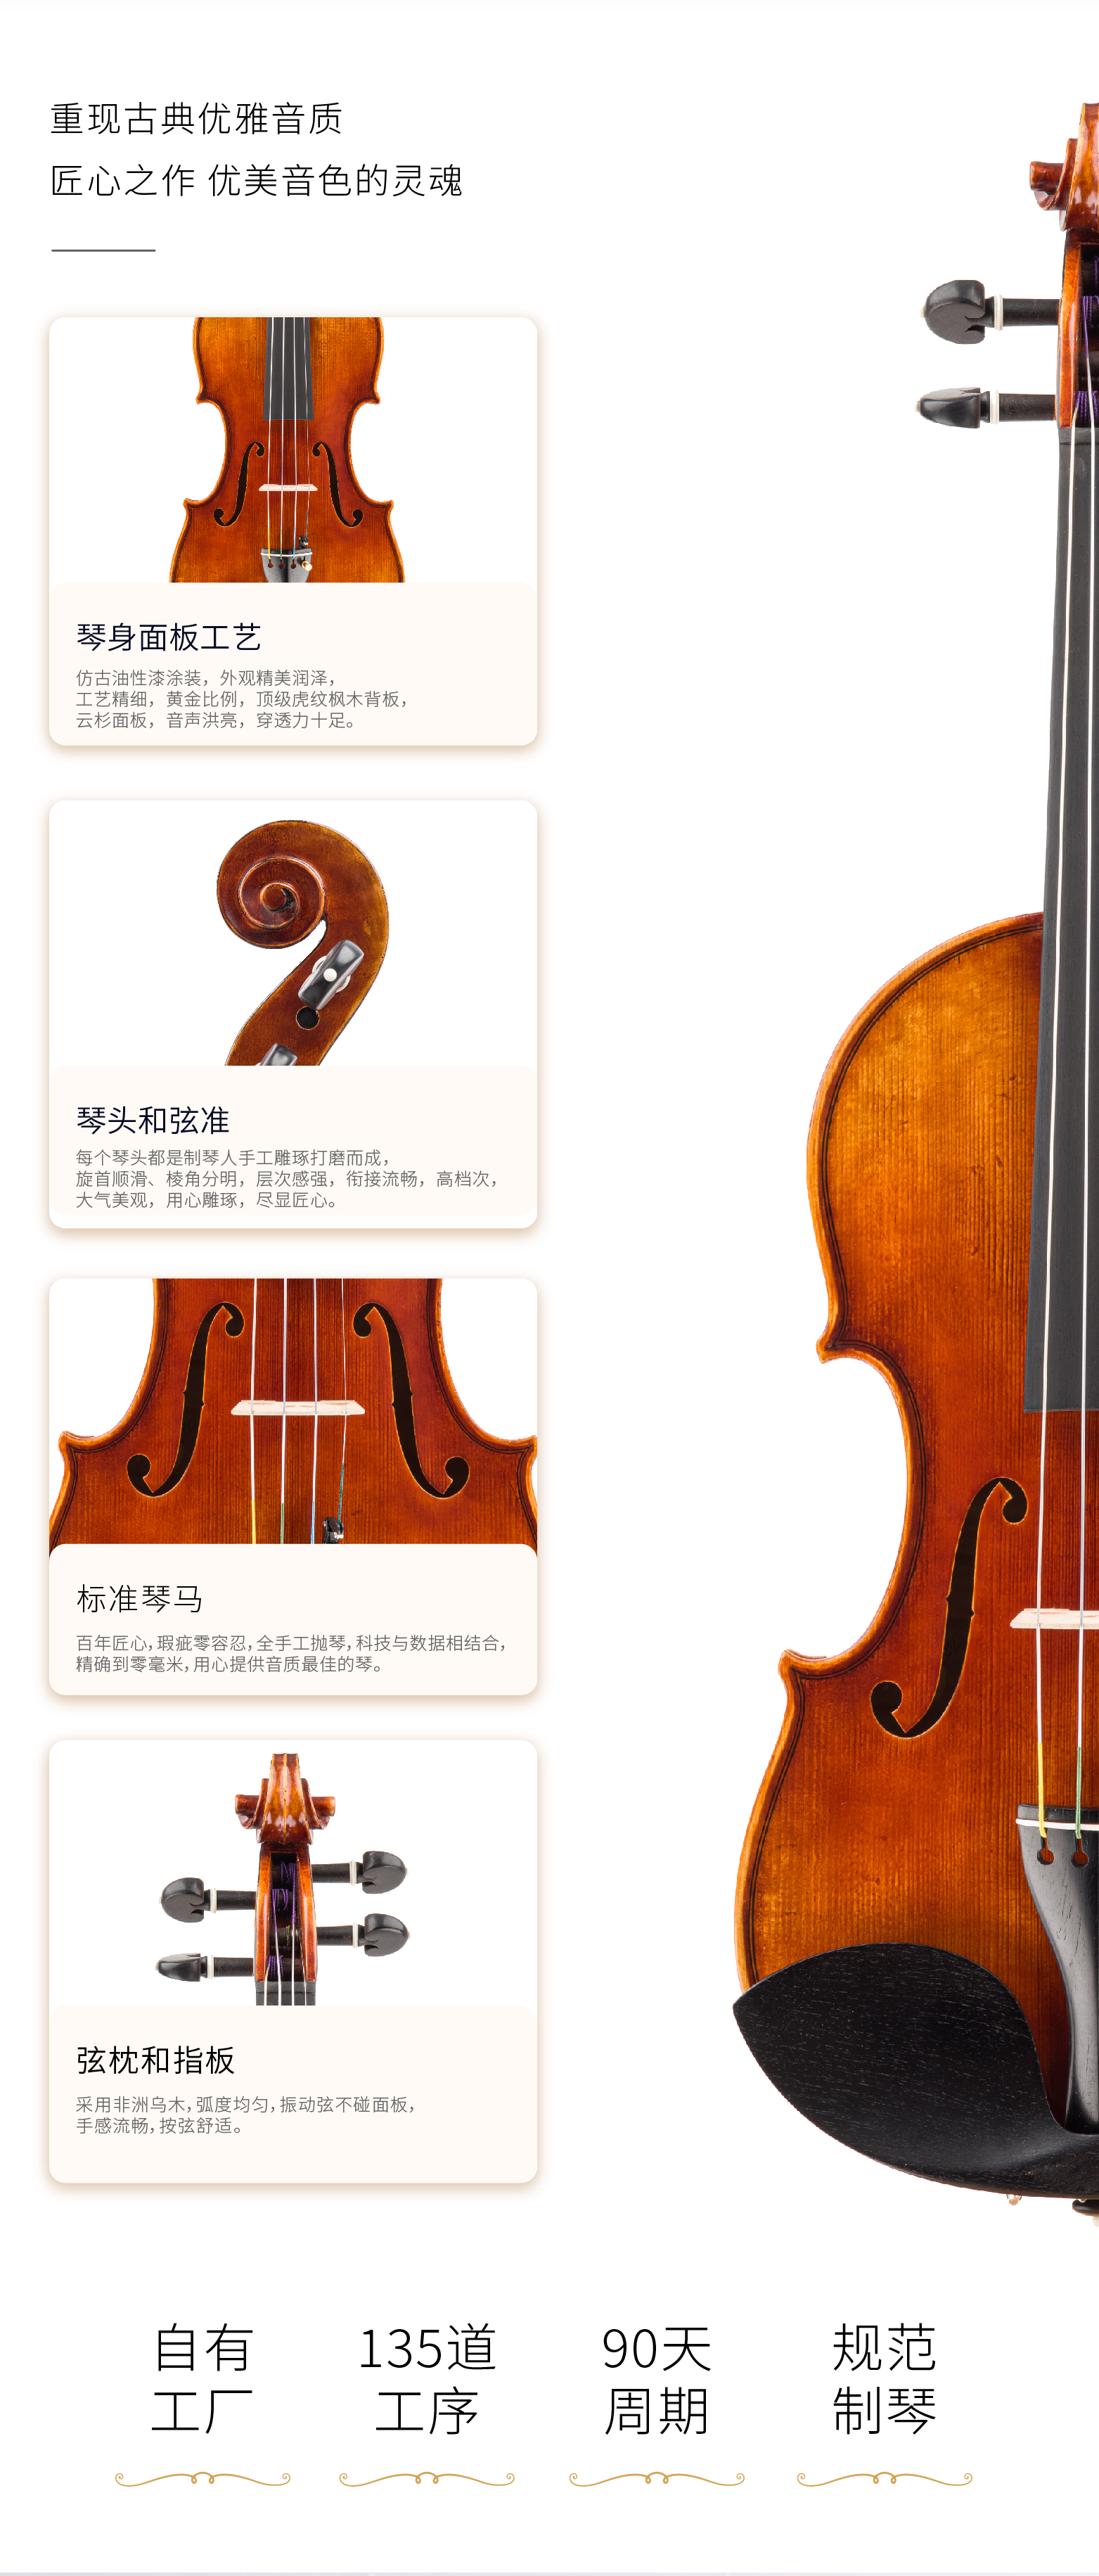 熙珑乐器专营店-详情-v1-2_SV882小提琴_复制_PC-副本-2_07.png